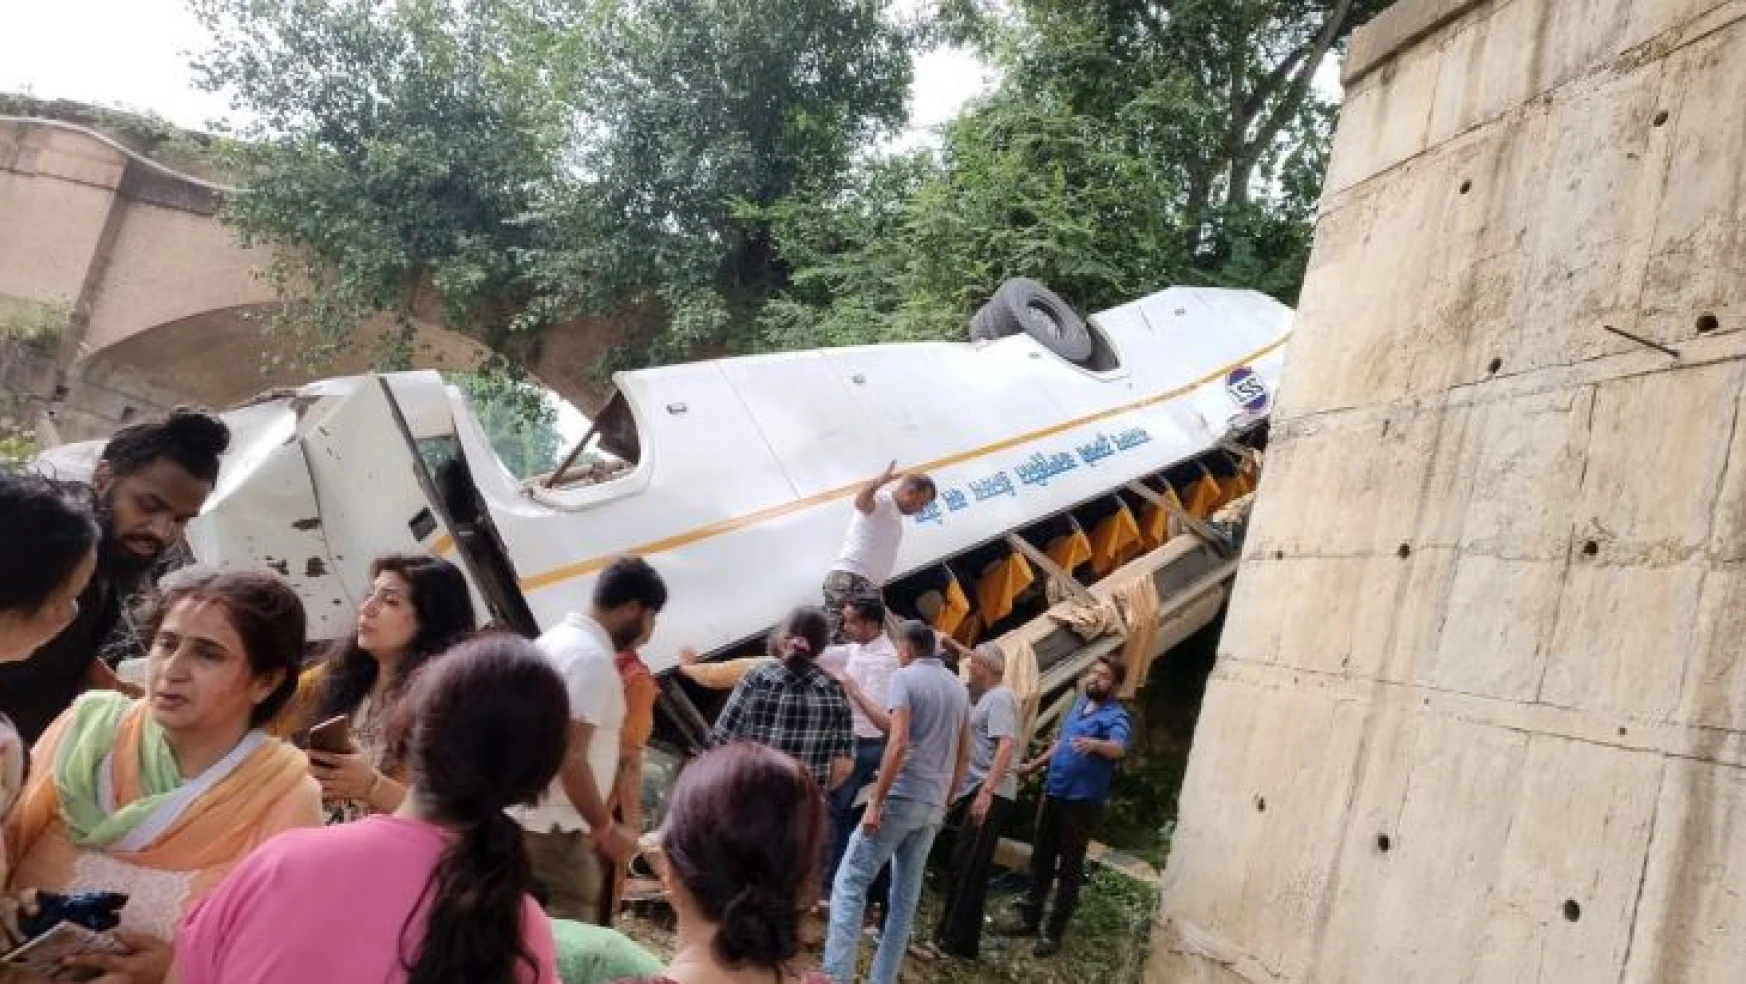 Hindistan'da otobüs nehre düştü: 7 ölü, 22 yaralı